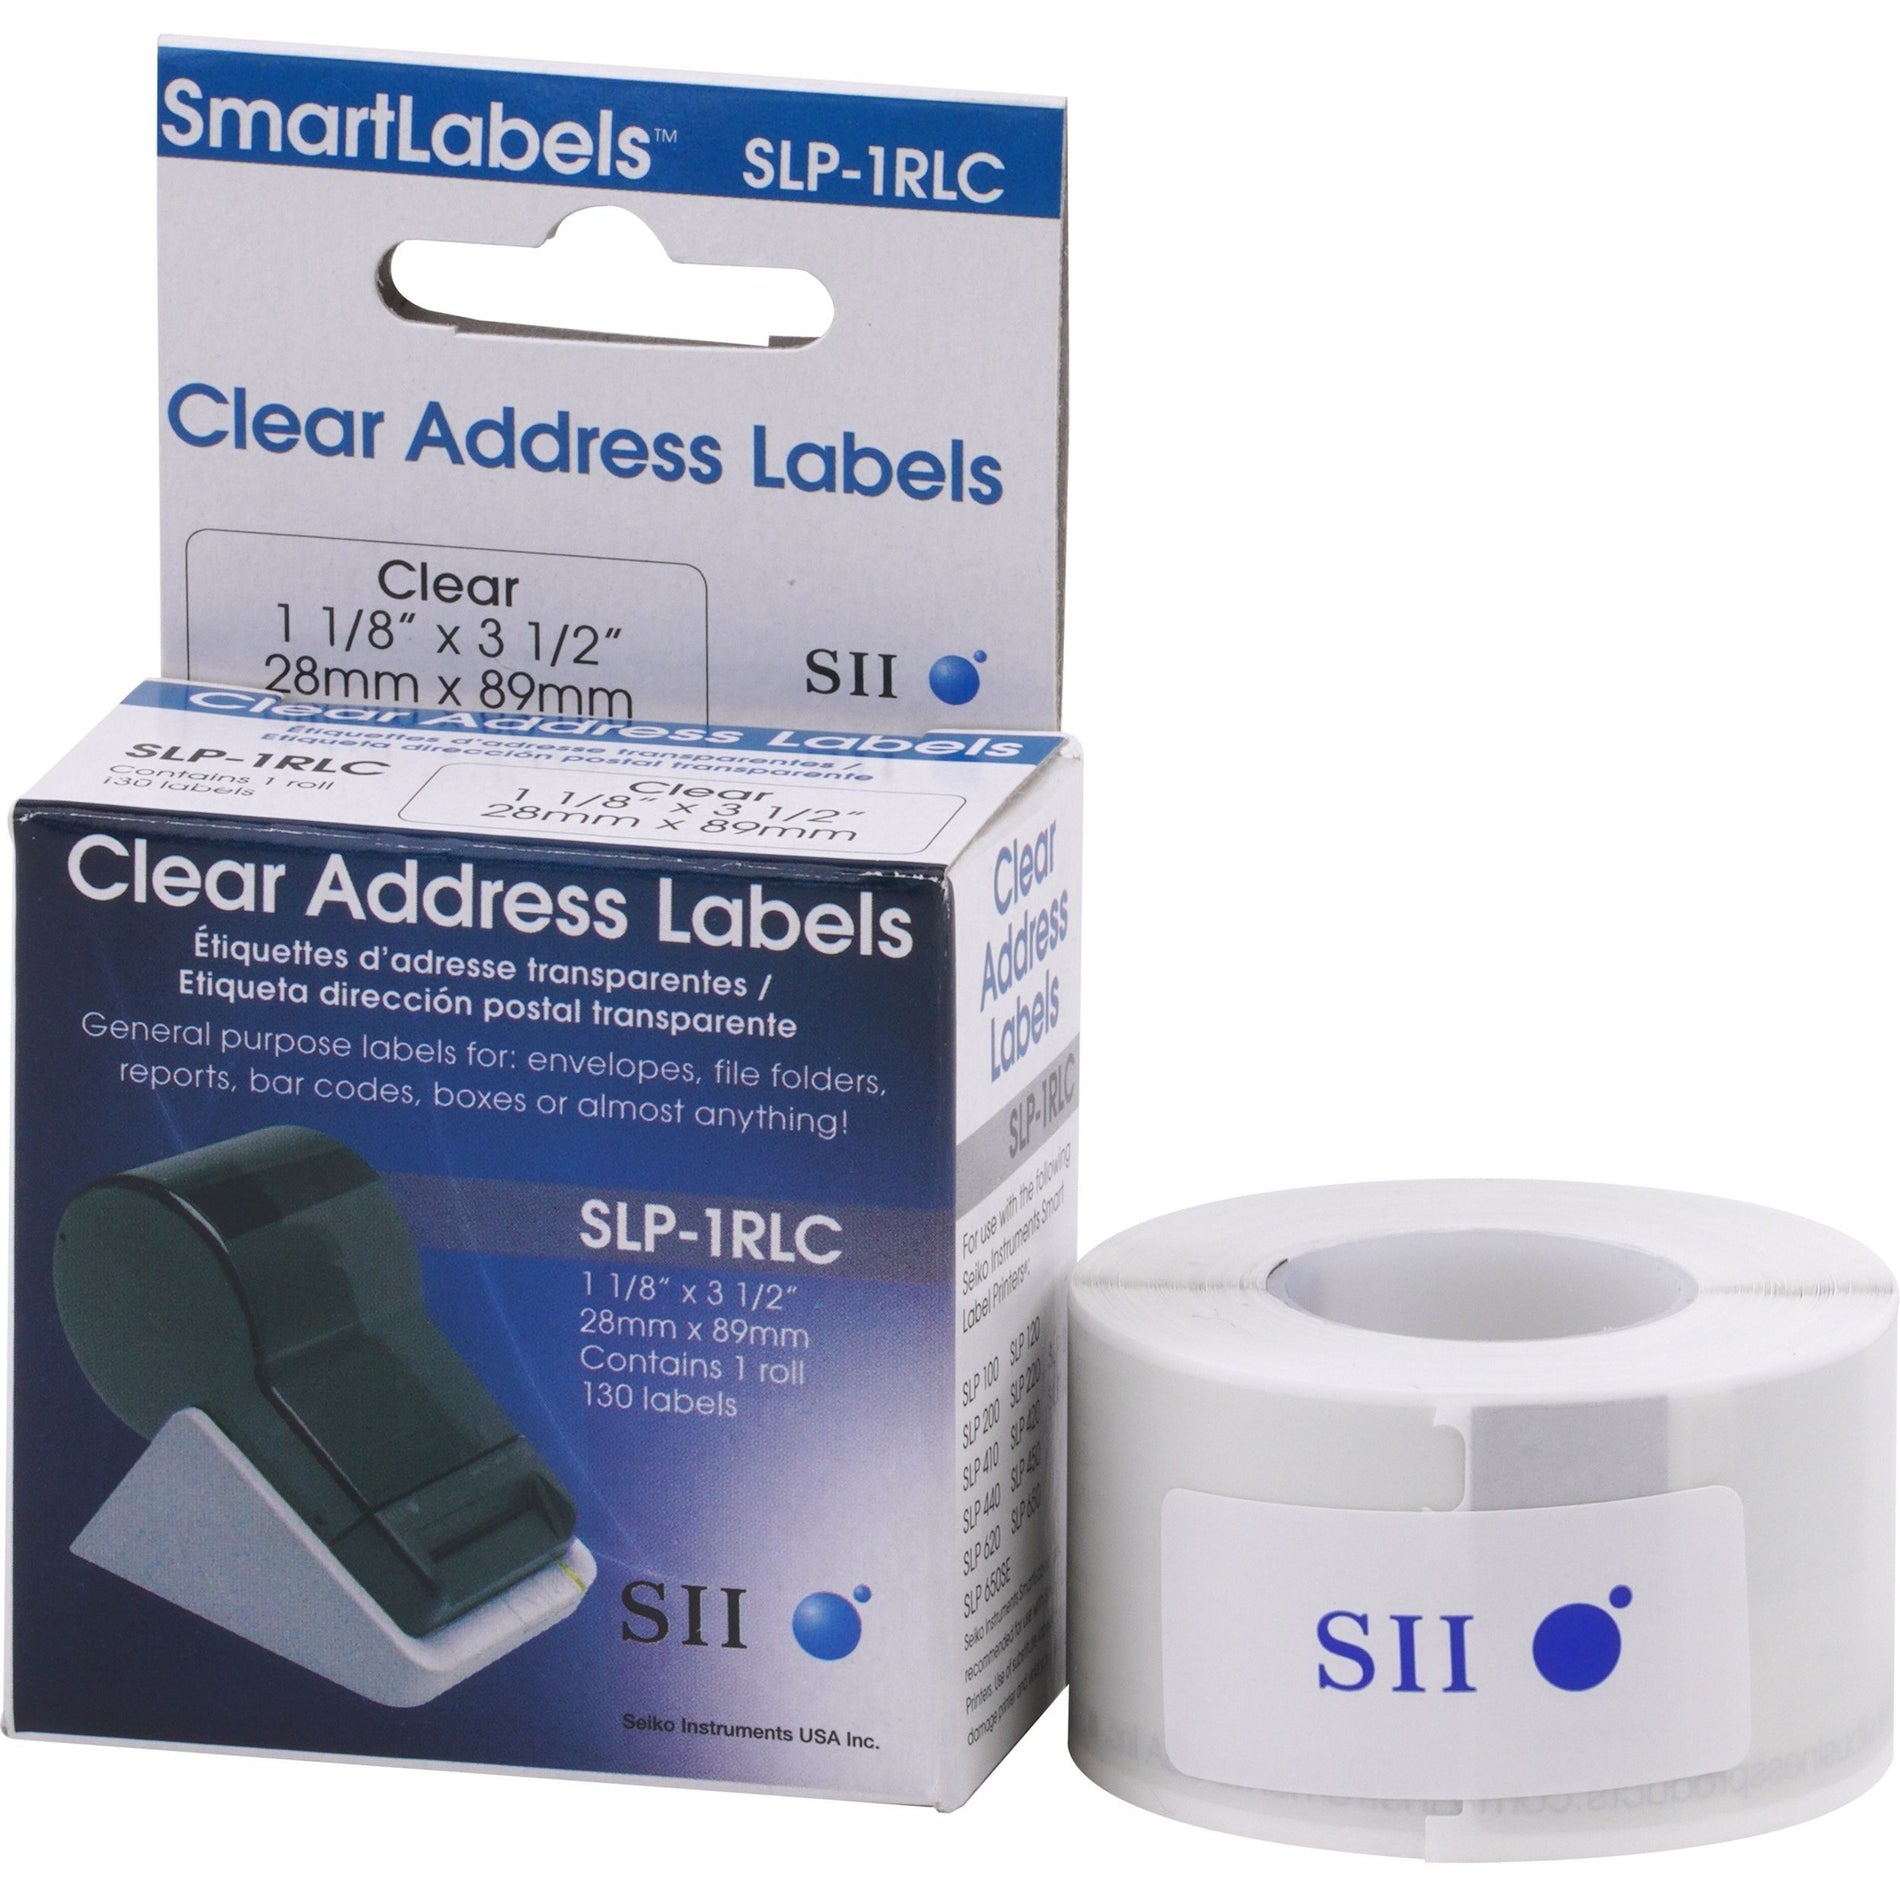 Seiko SLP-1RLC Address Label, Clear, 3 1/2" x 1 1/8", 130 Labels per Roll